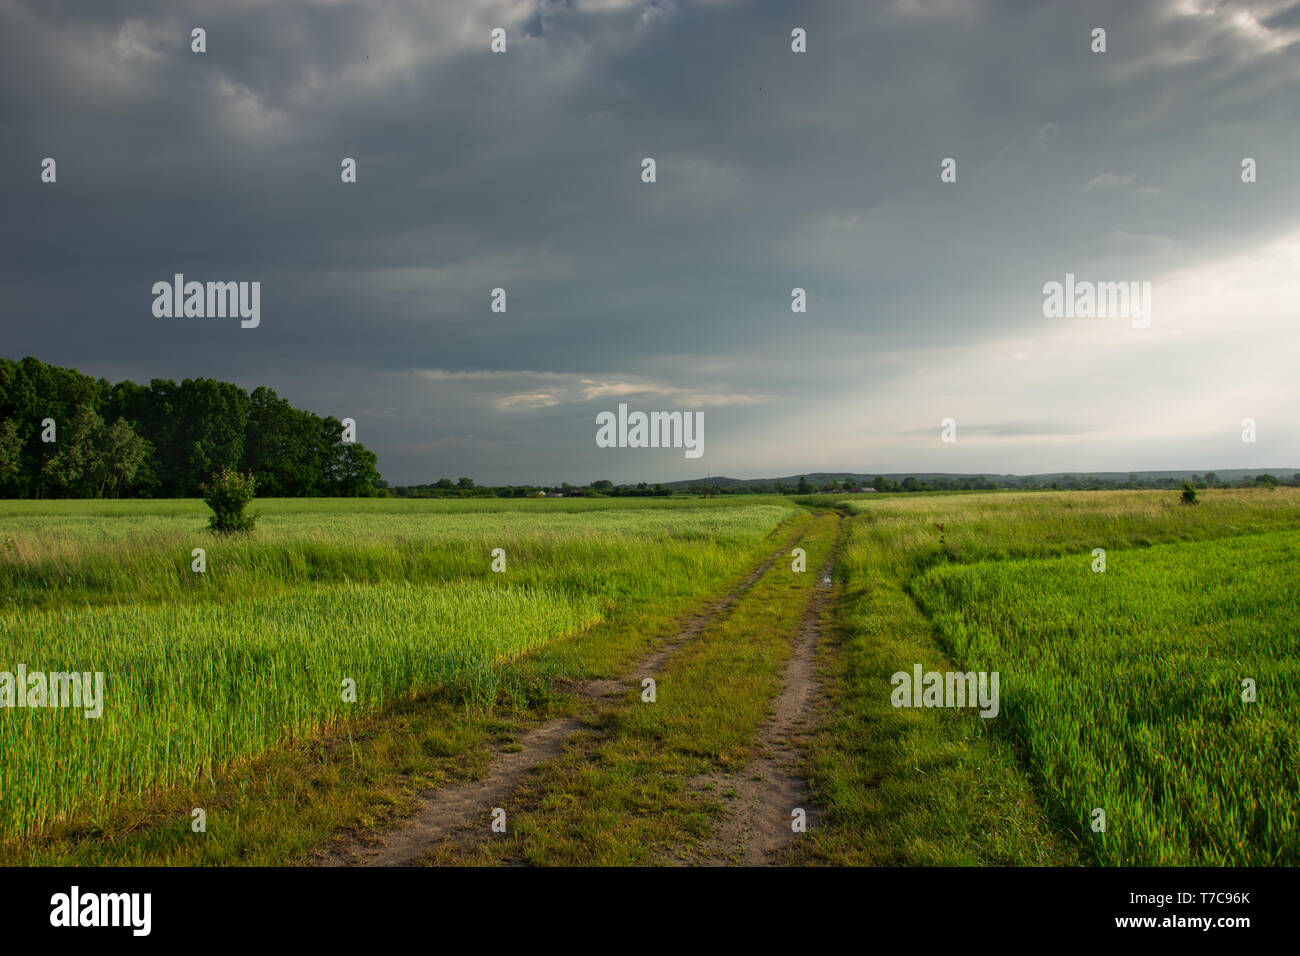 Strada sterrata attraverso campi verdi, nubi e la luce del sole nel cielo Foto Stock